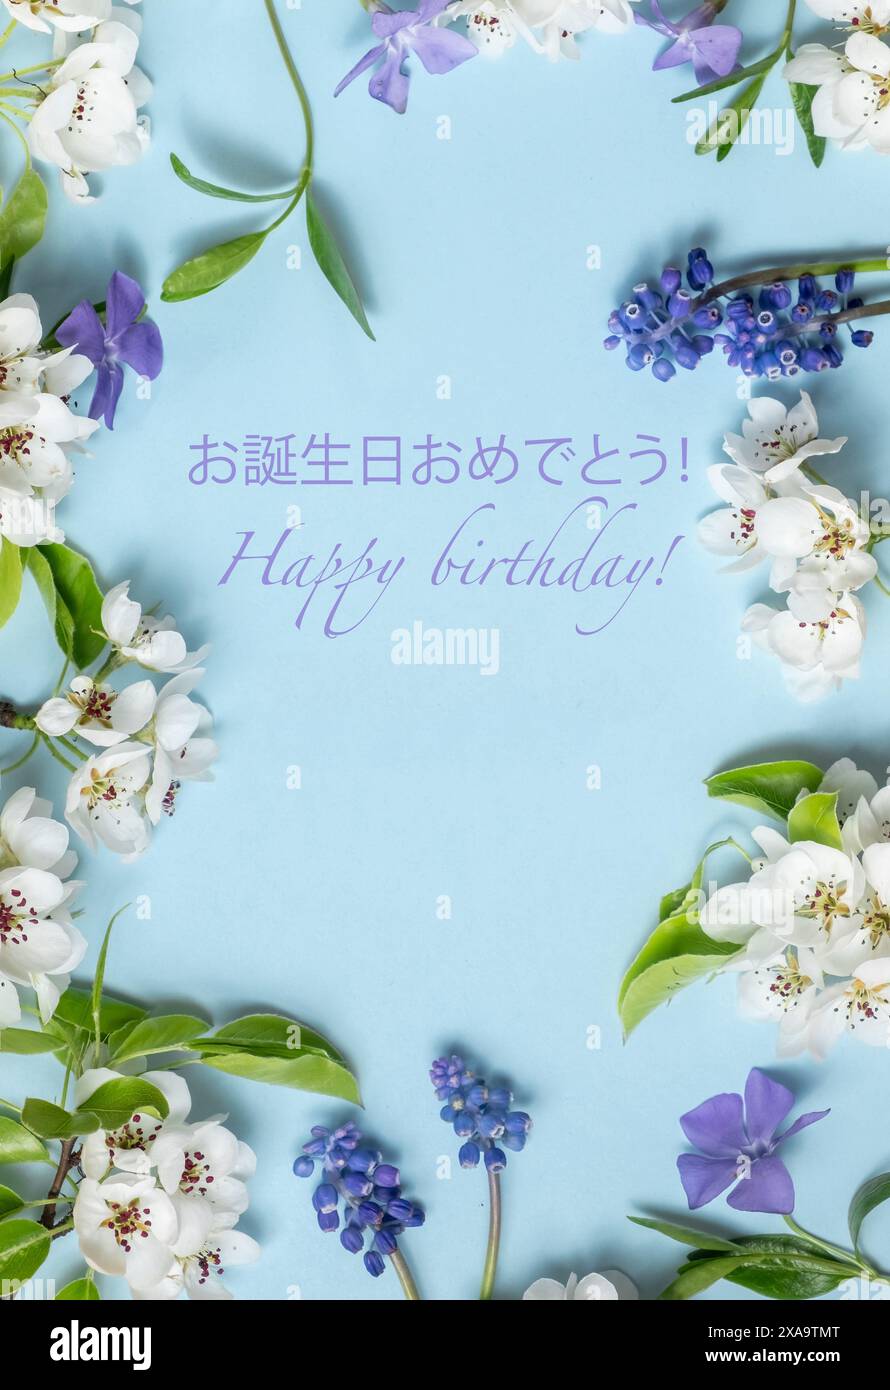 Biglietto di auguri di buon compleanno in giapponese e inglese e fiori freschi di primavera colorati su un morbido sfondo blu. Foto estetica, disposizione piatta Foto Stock